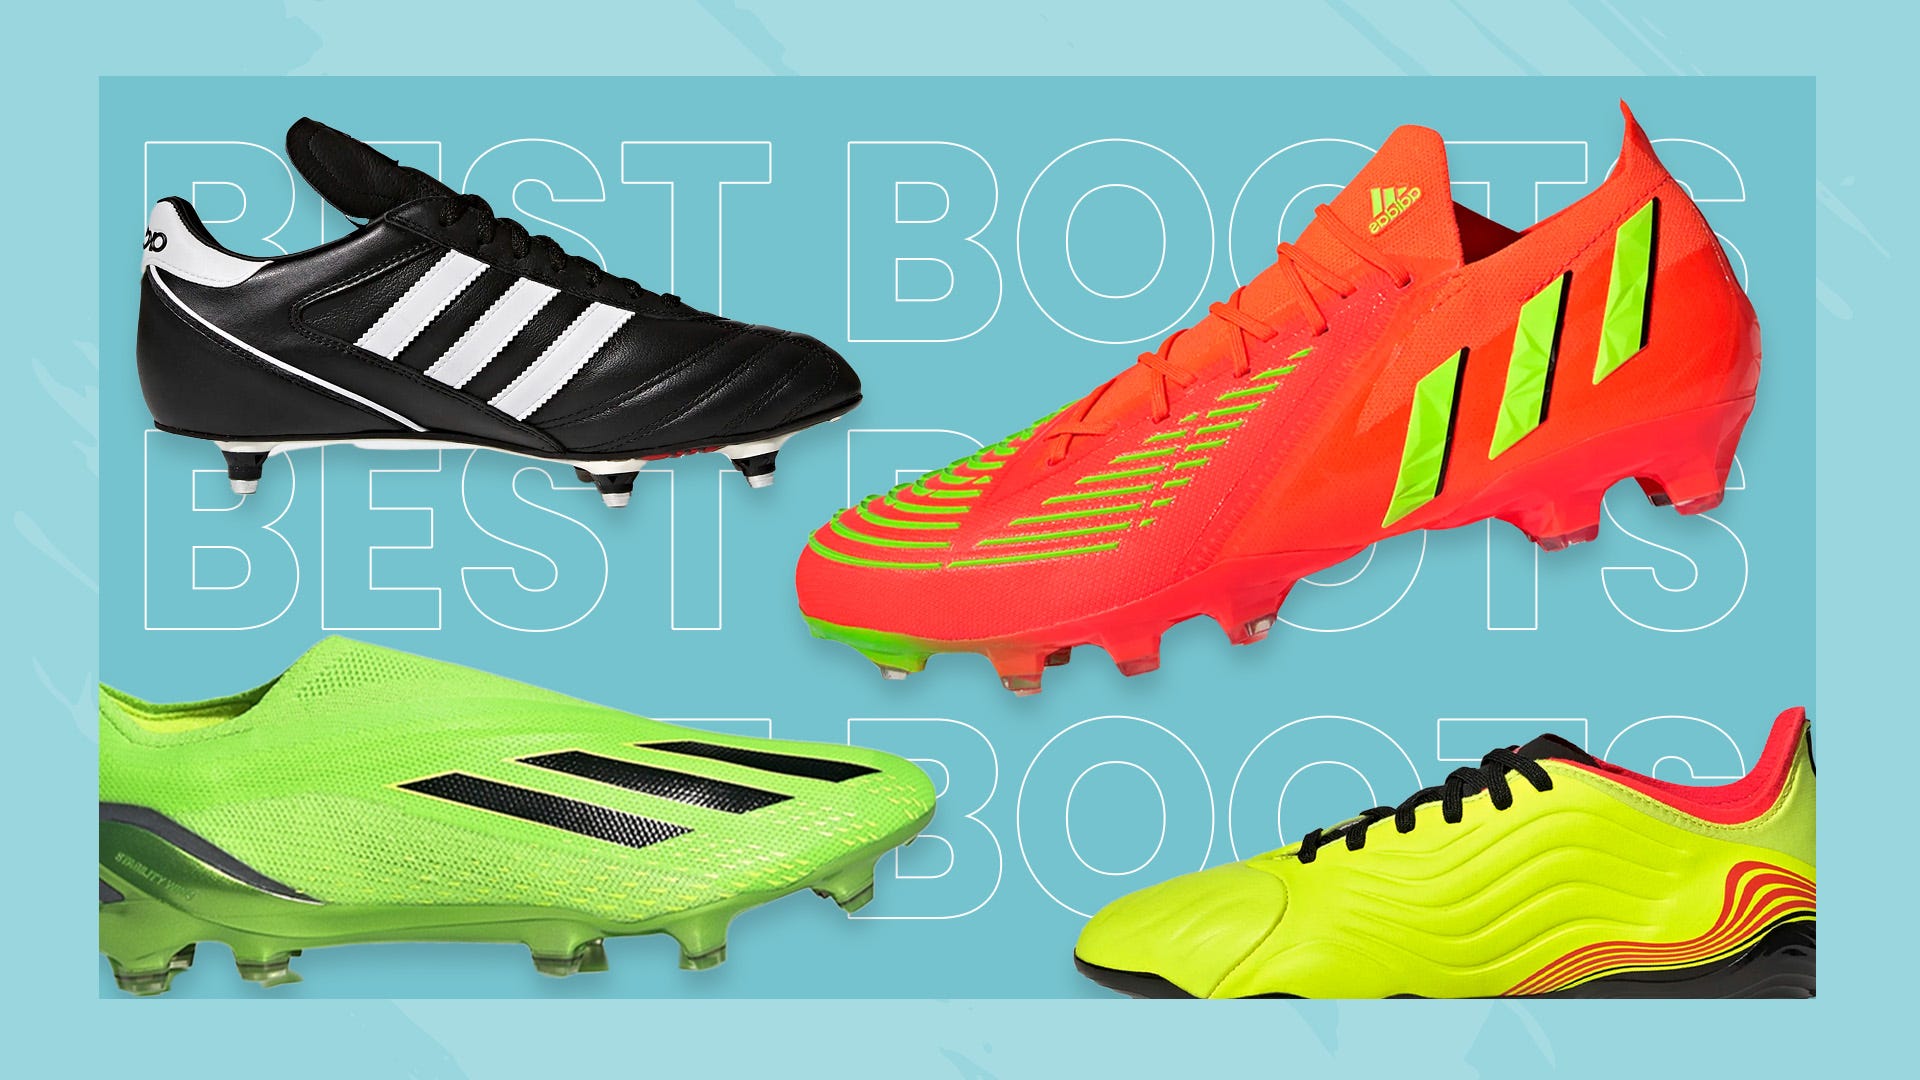 Debilidad años Energizar The best adidas football boots you can buy in 2022 | Goal.com English Qatar